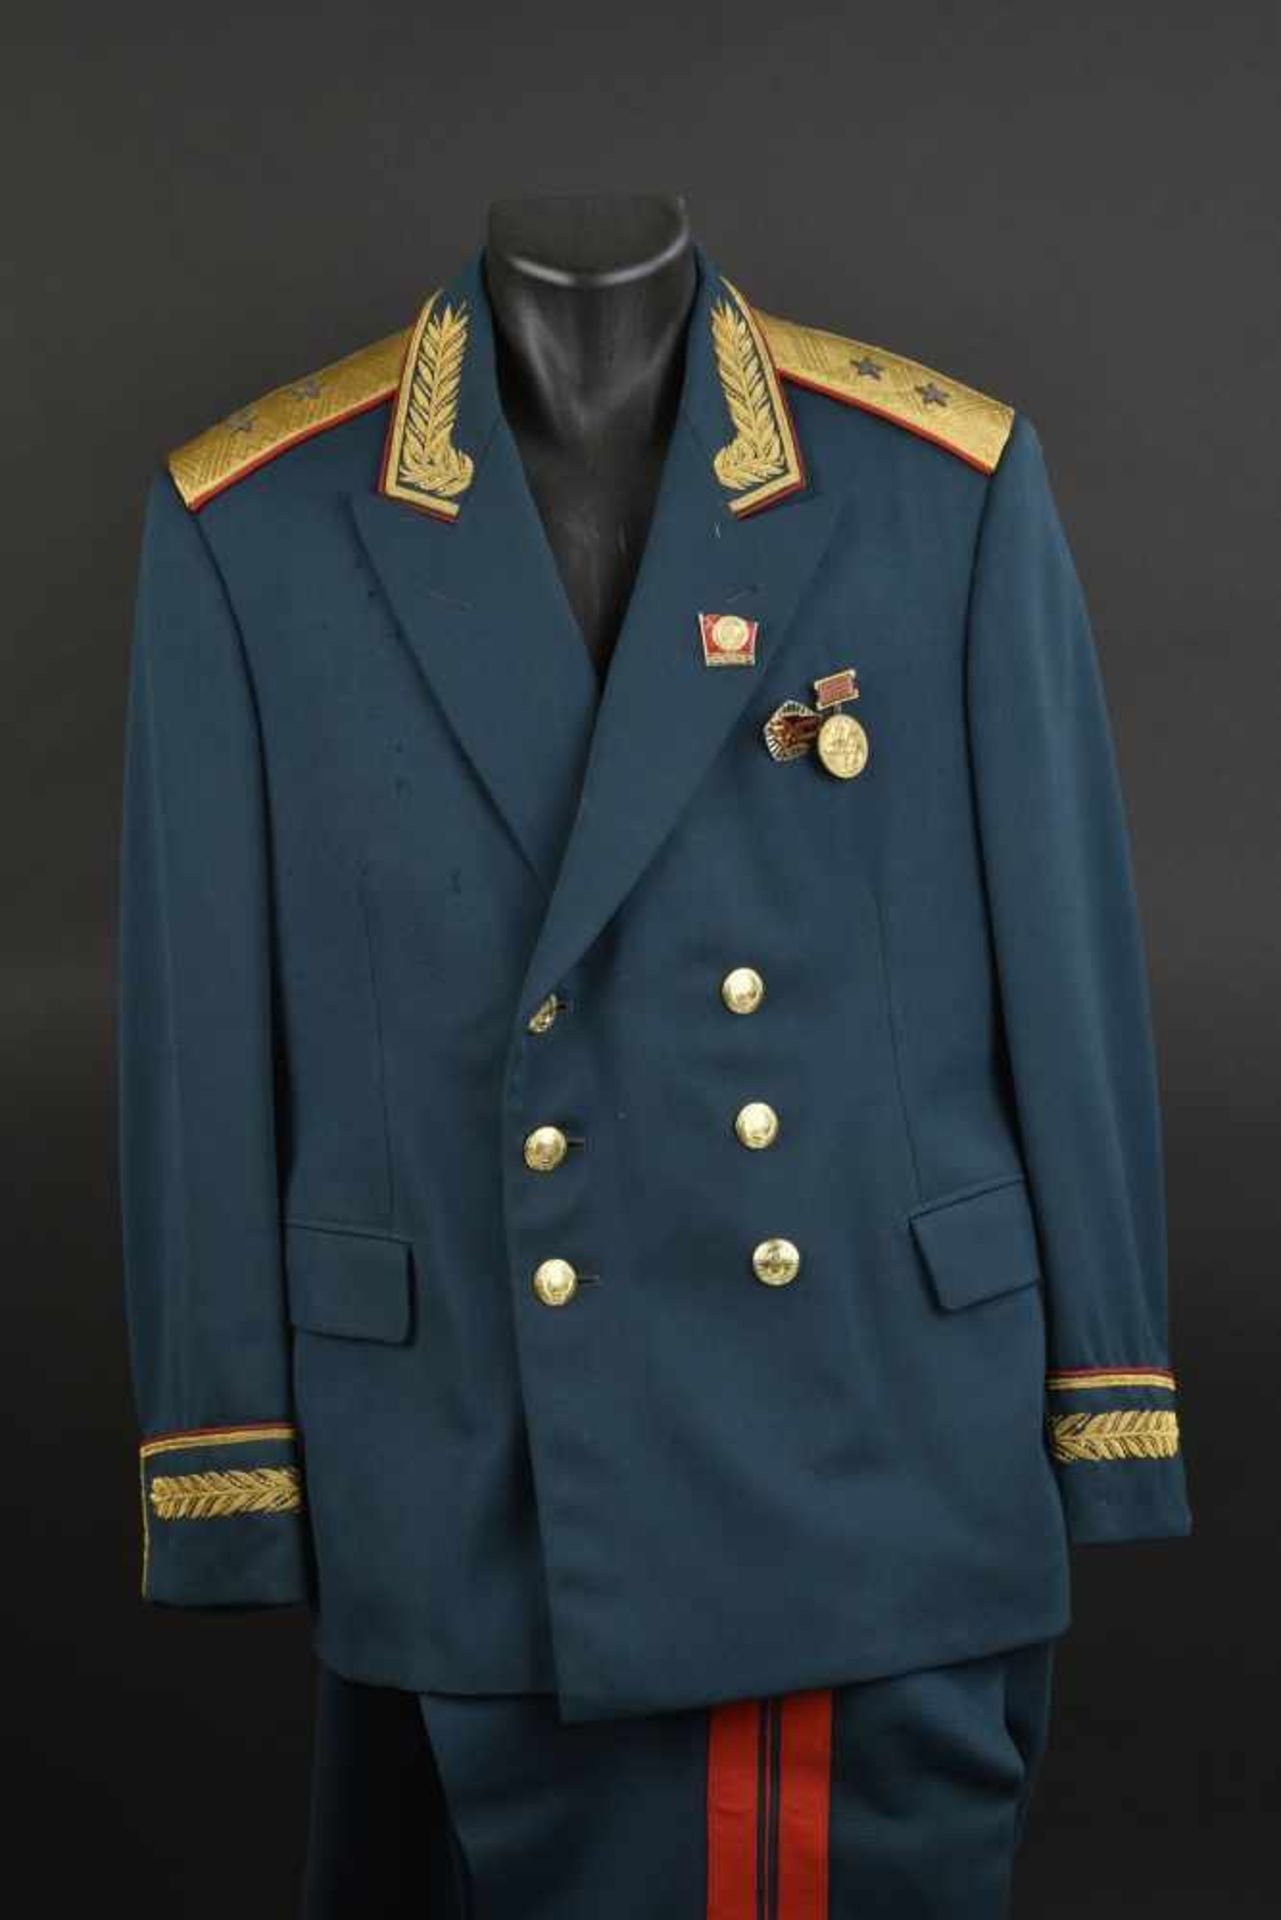 Uniforme de Lieutenant Général Soviétique de 1967. En tissu vert foncé, grade de Lieutenant Général,